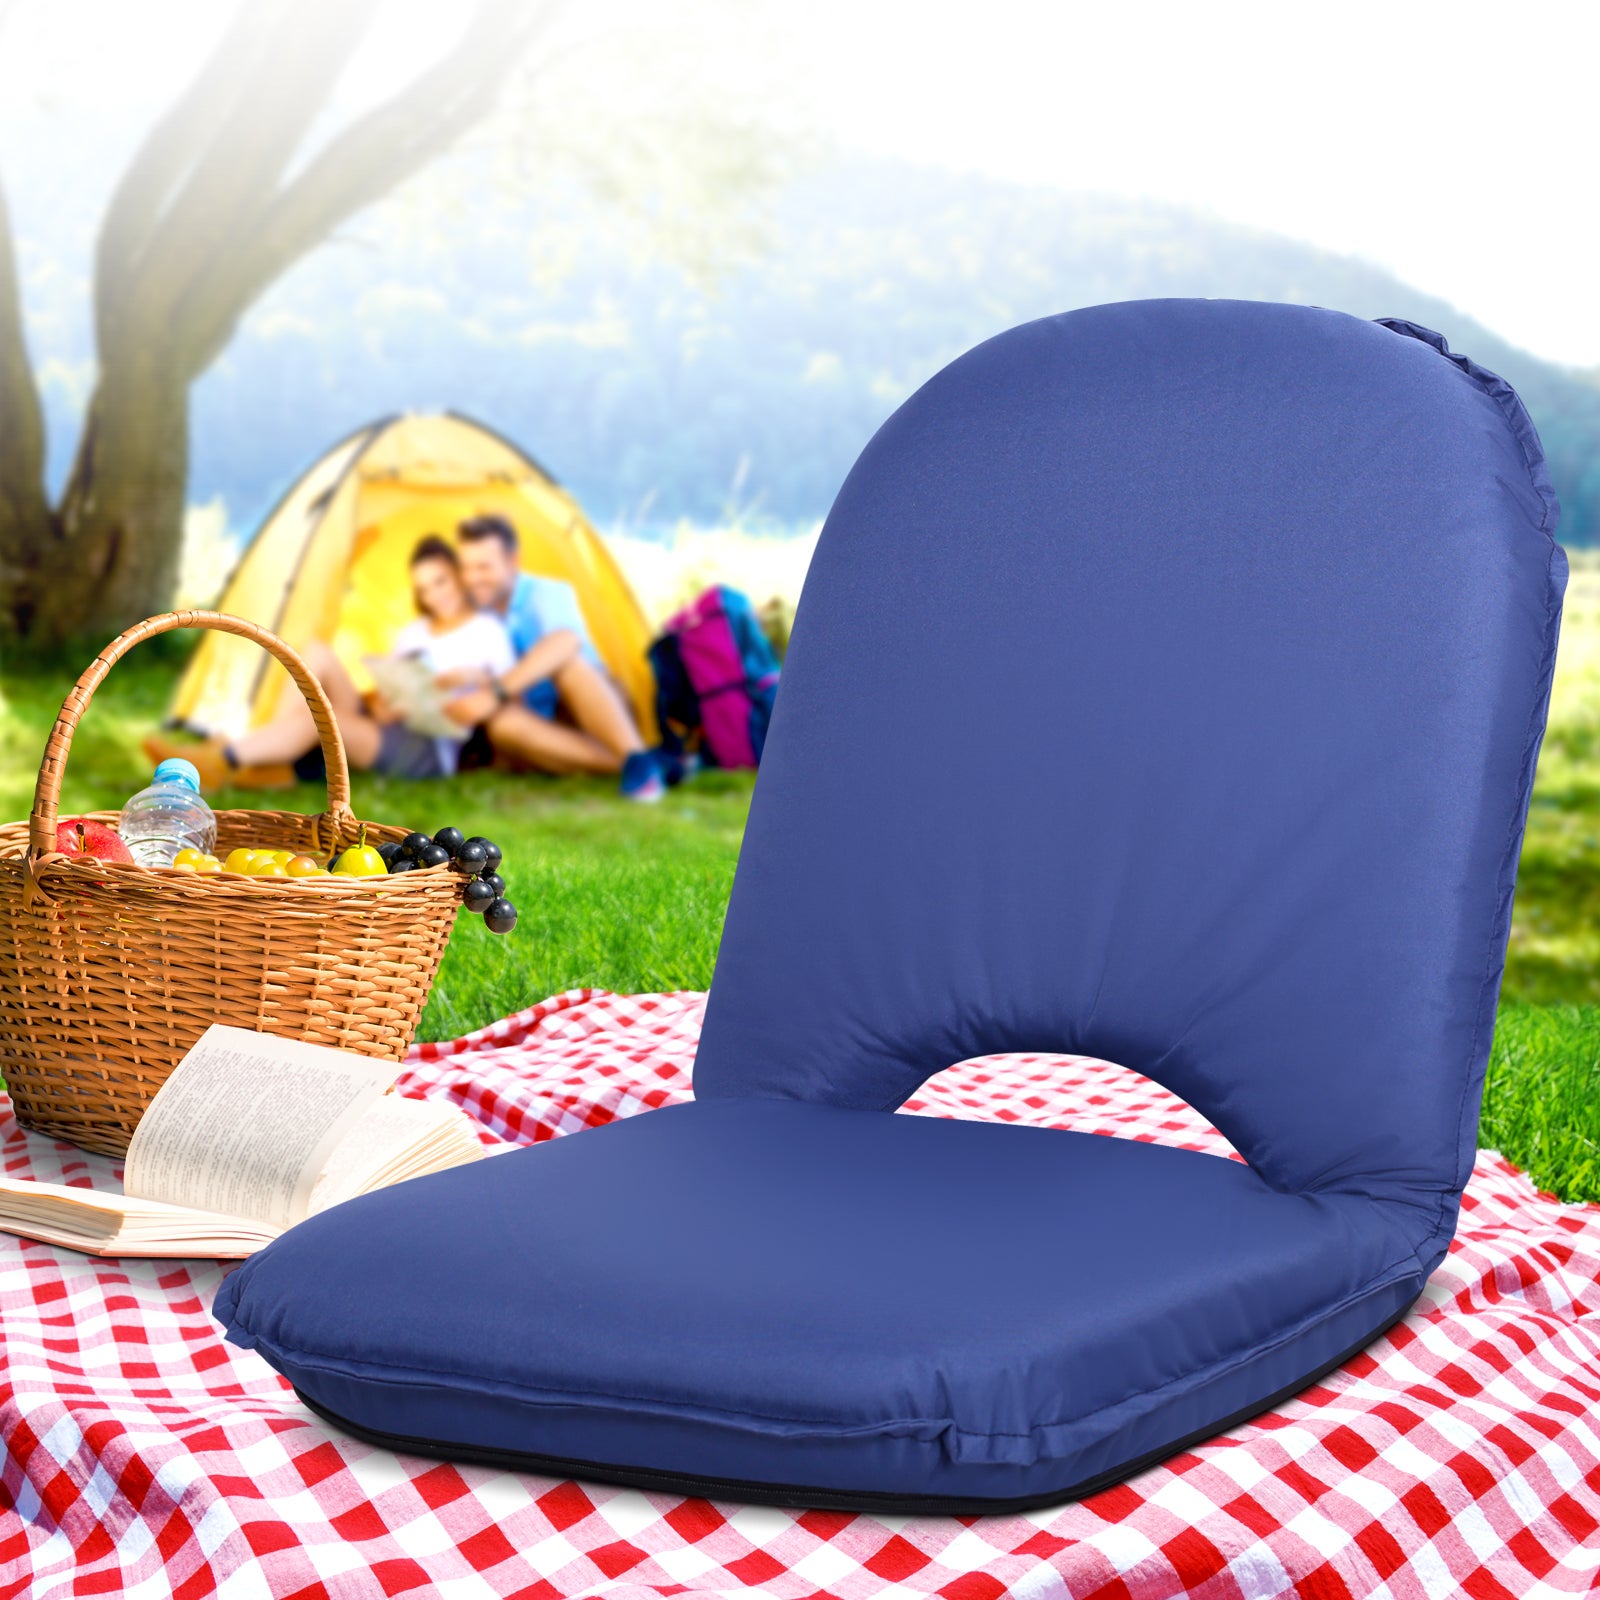 Simple Floor Beach Chair with Simple Decor